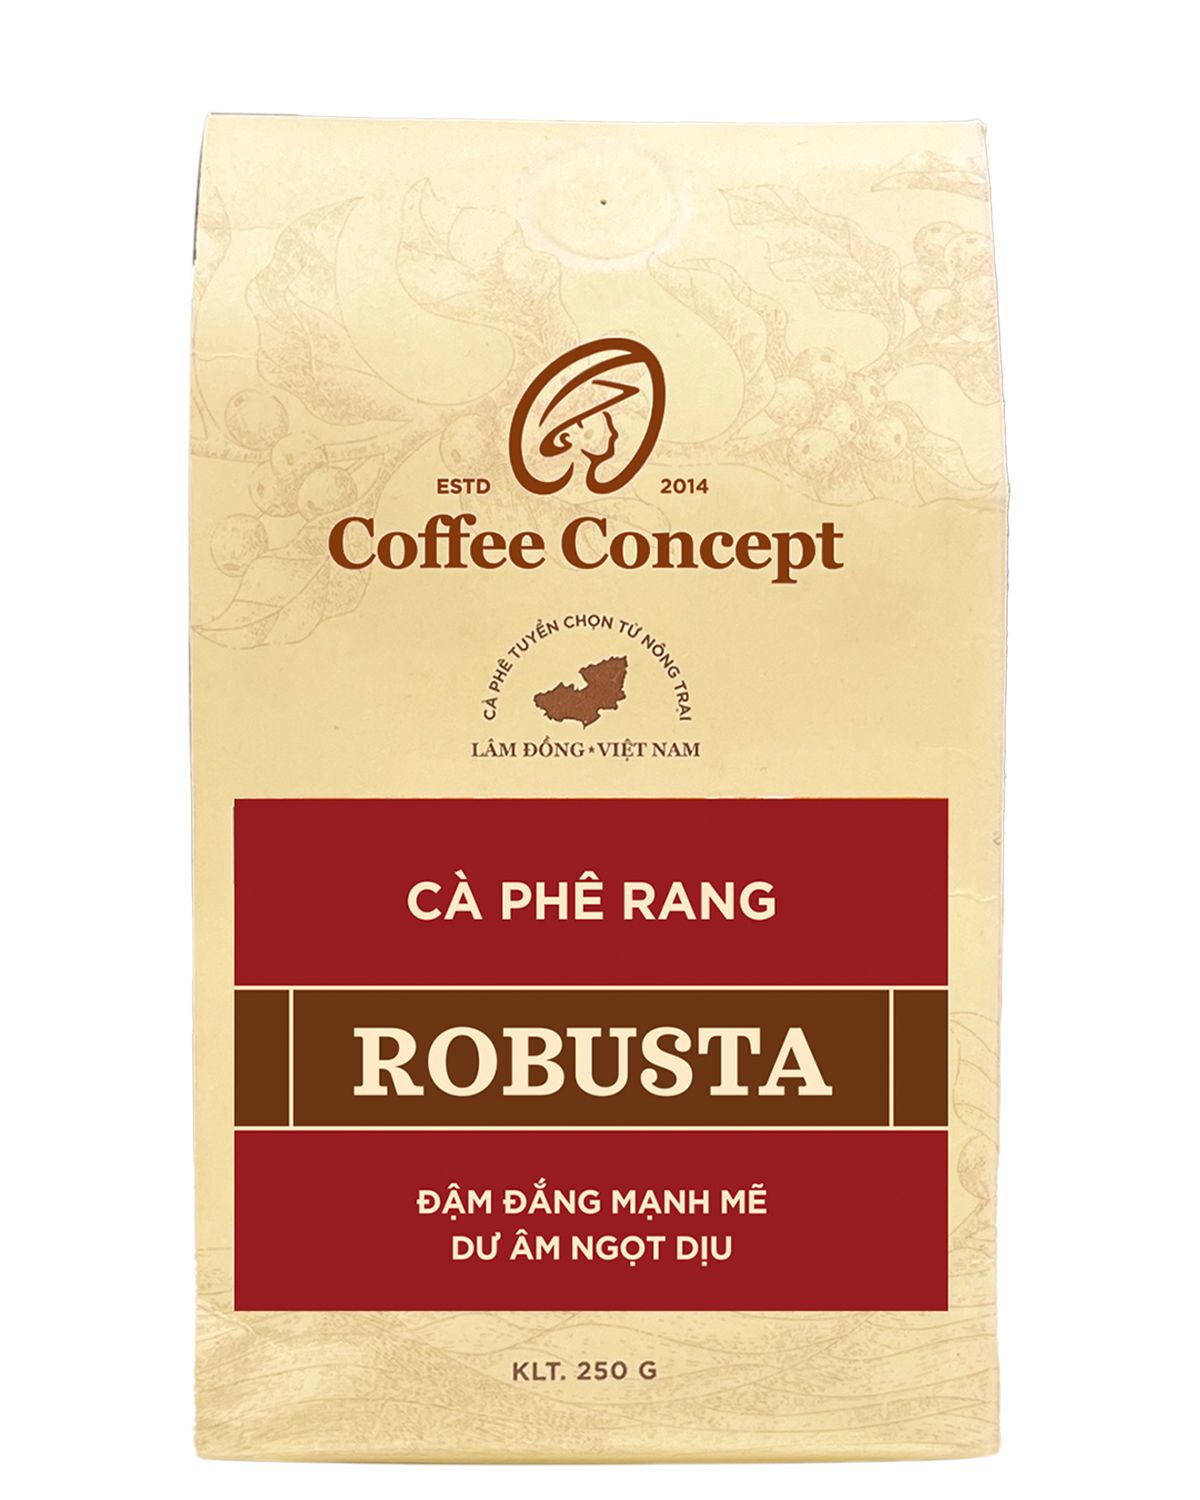  Cà phê rang ROBUSTA - Gói 250G/500G 